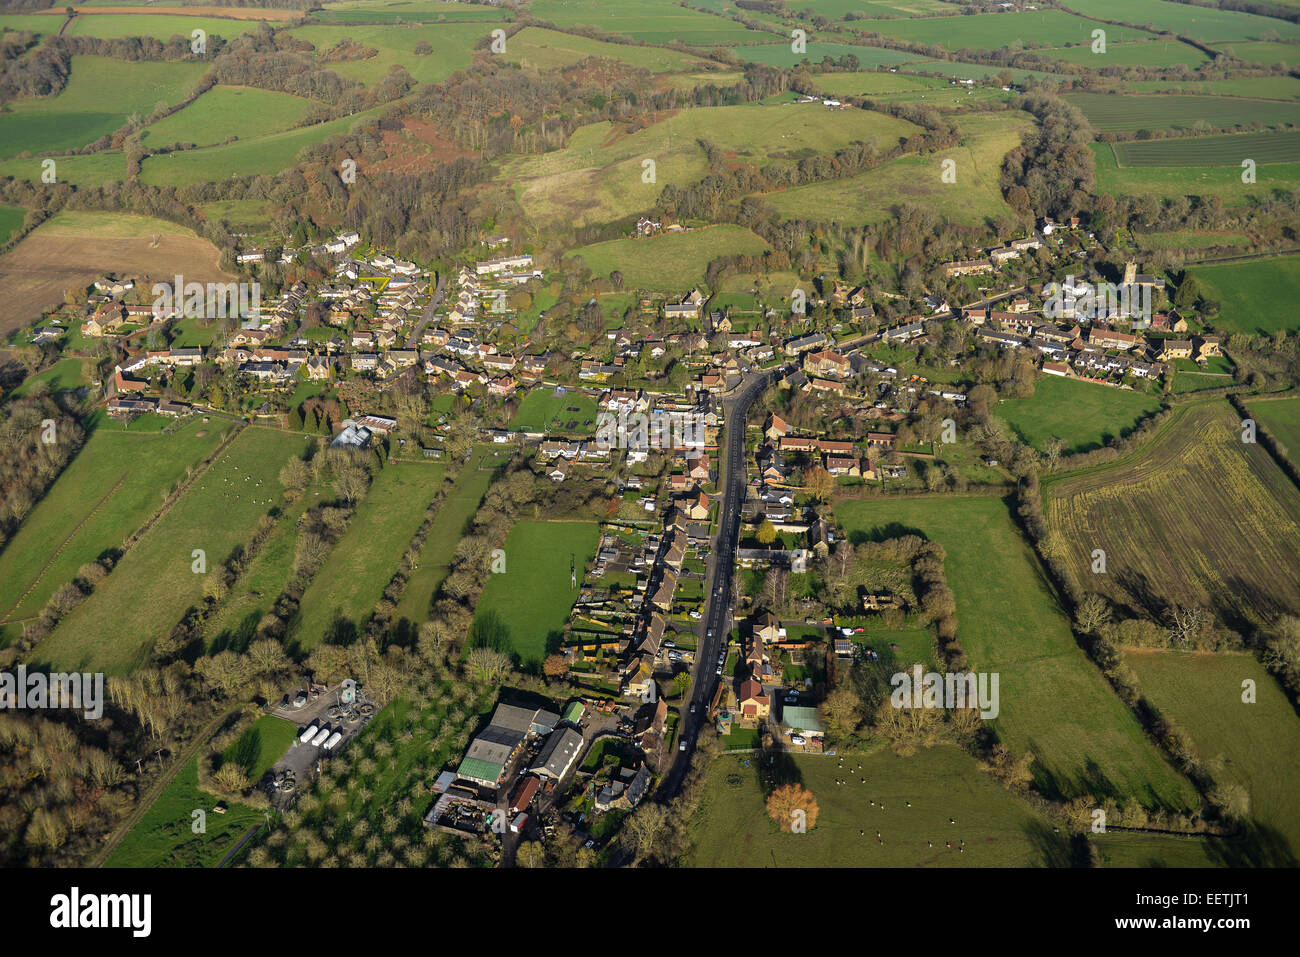 Una vista aérea de la aldea de Somerset East Chinnock en contexto con tierras que rodean Foto de stock